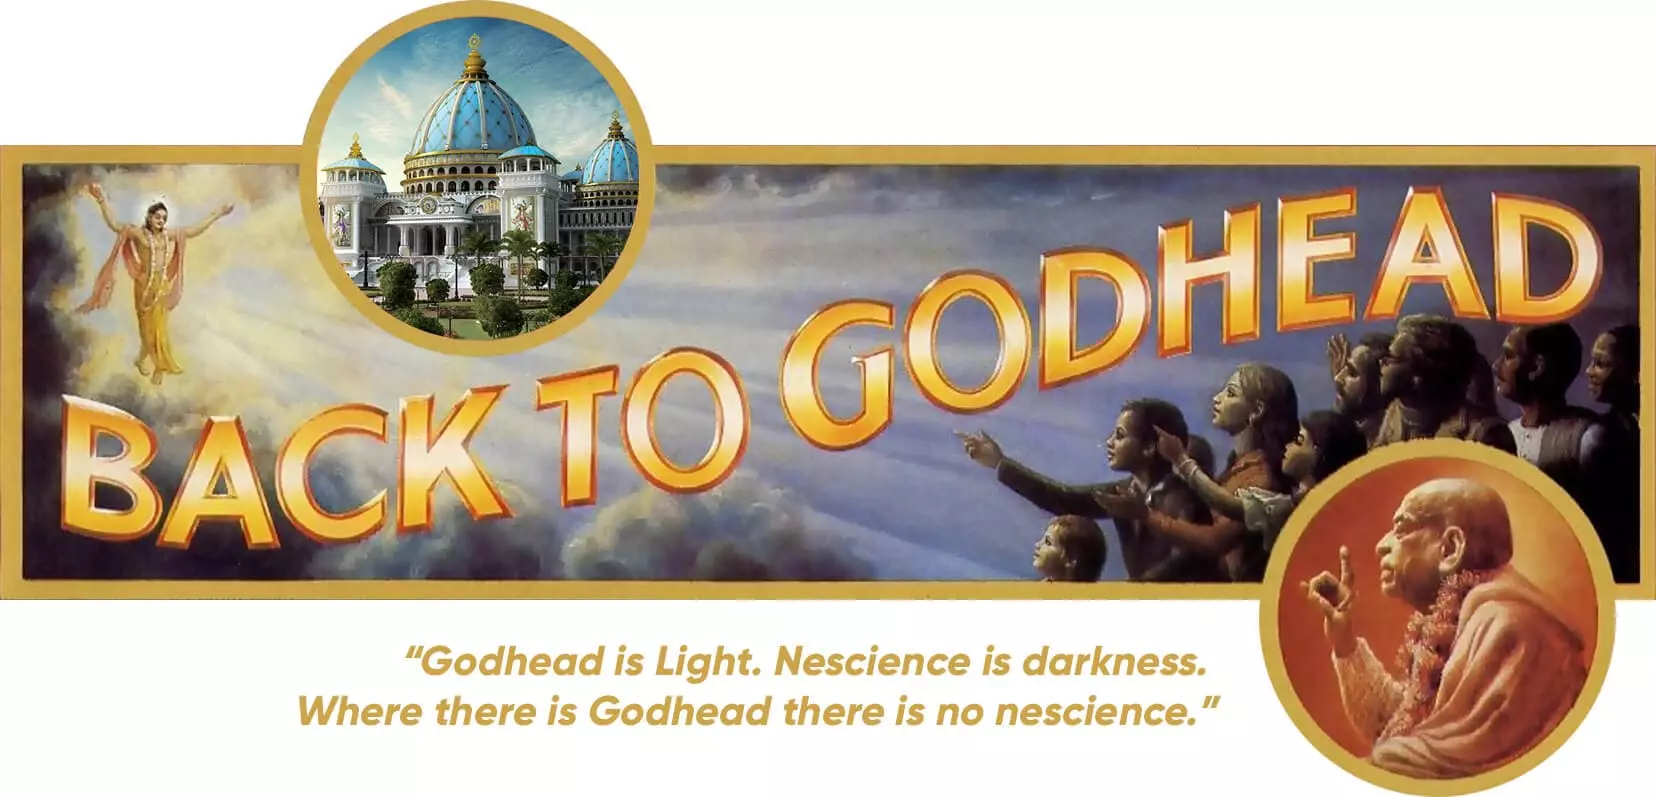 برنامج التوعية حول معبد القبة السماوية الفيدية - عودة إلى غلاف مجلة Godhead